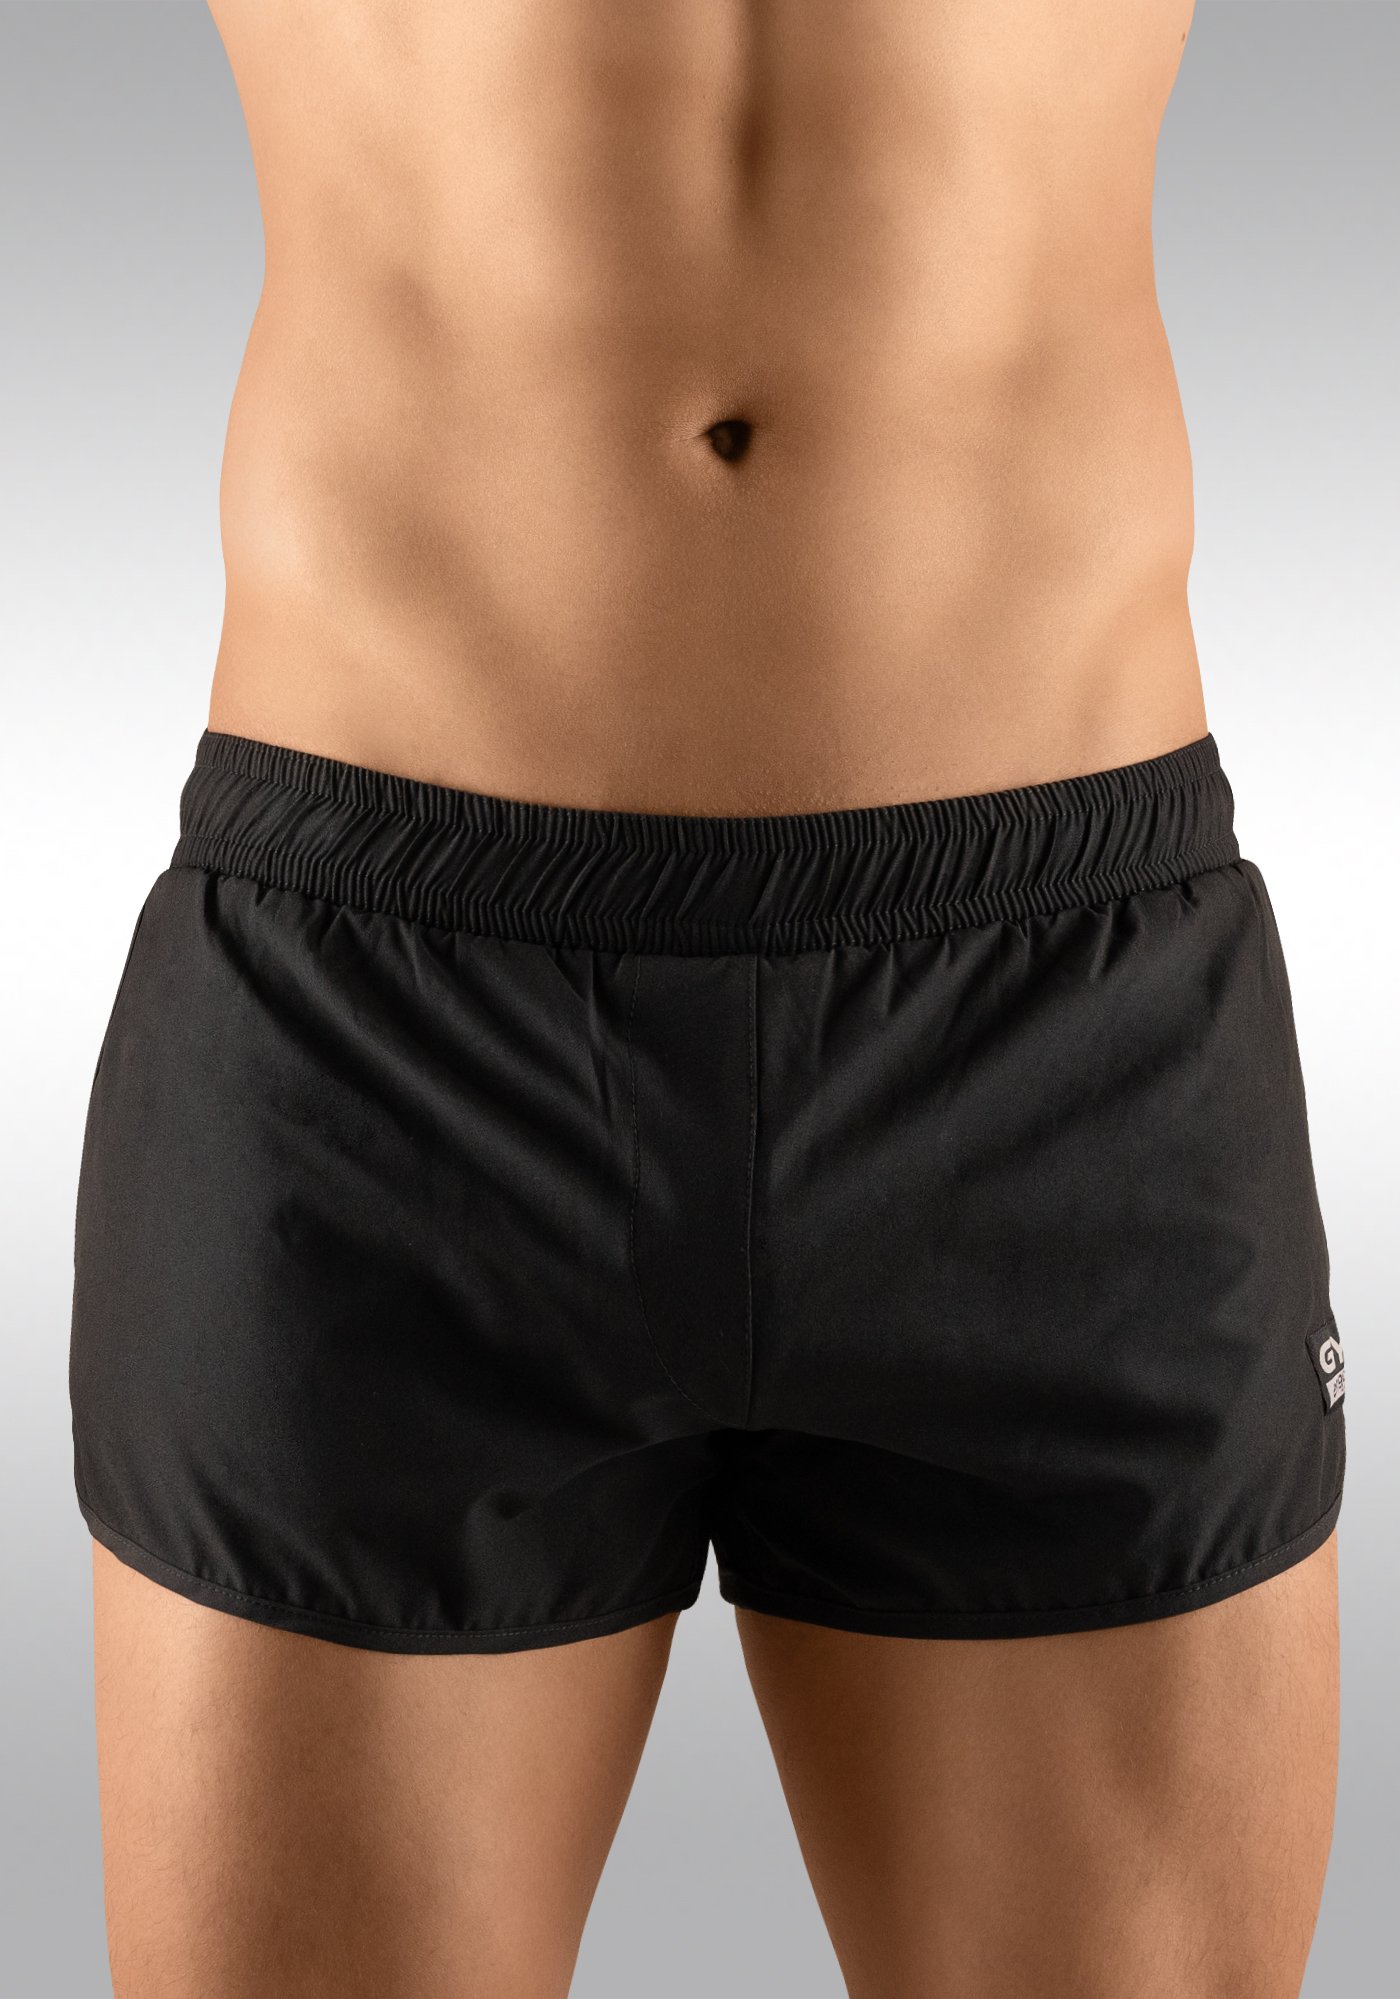 Men's Gym Shorts Black Front View - Ergowear